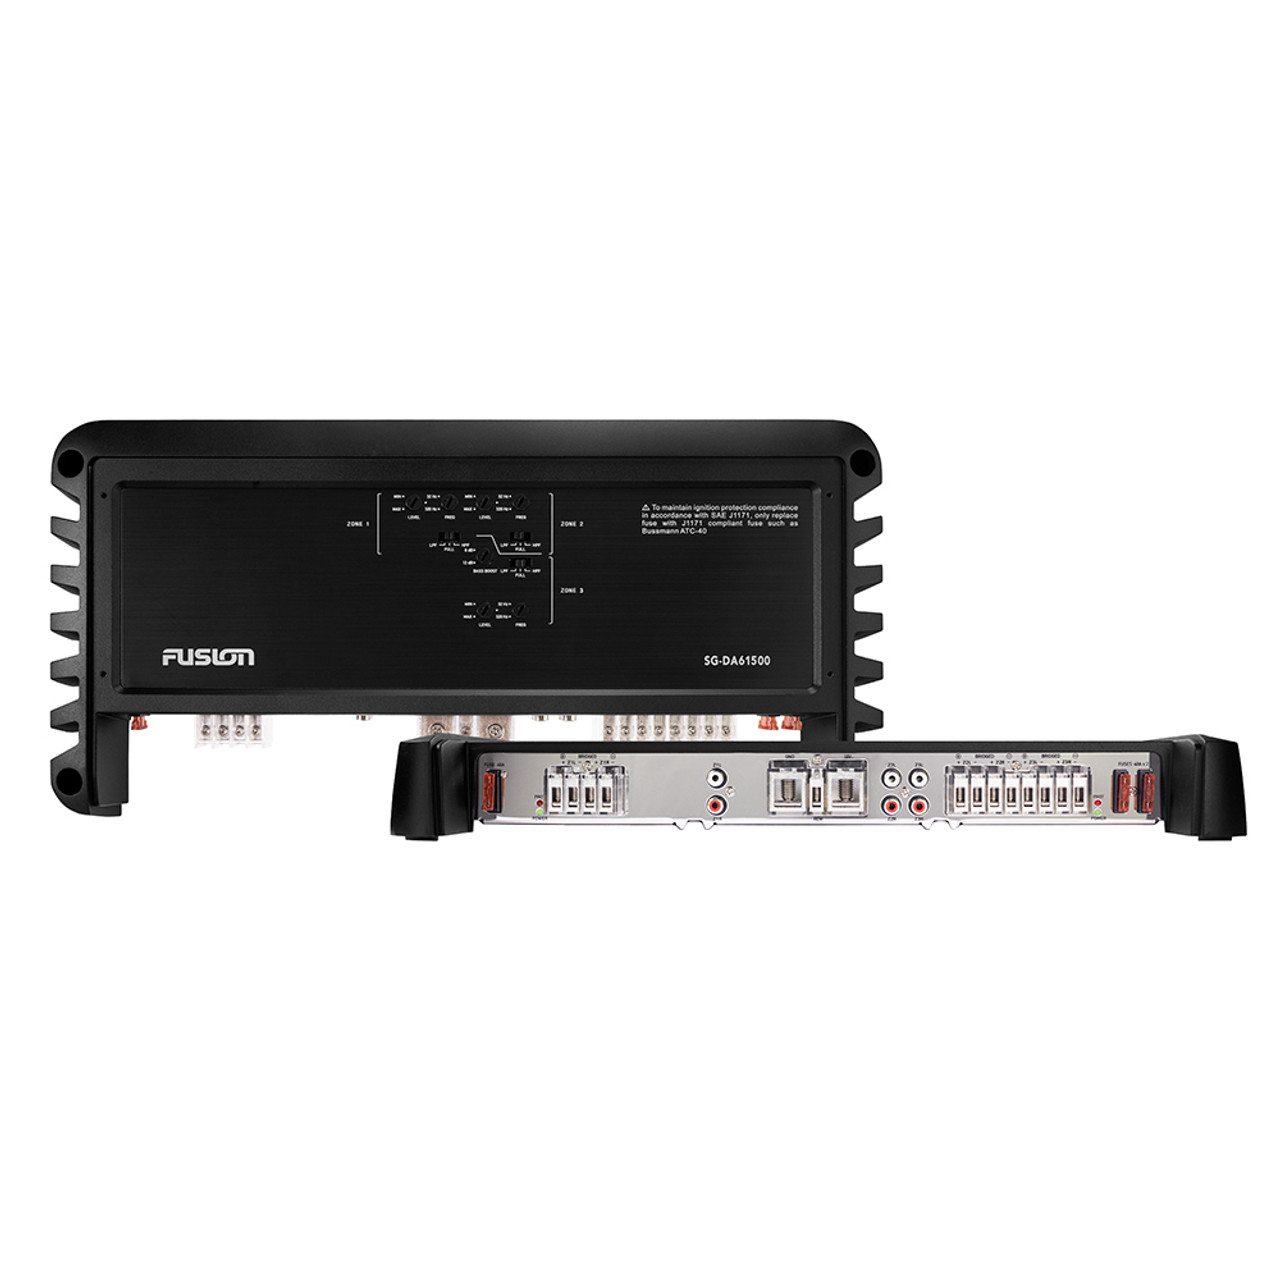 Fusion - SG-24DA61500 Signature Series 1500W - 6 Channel Amplifier - 24V - Apollo Lighting